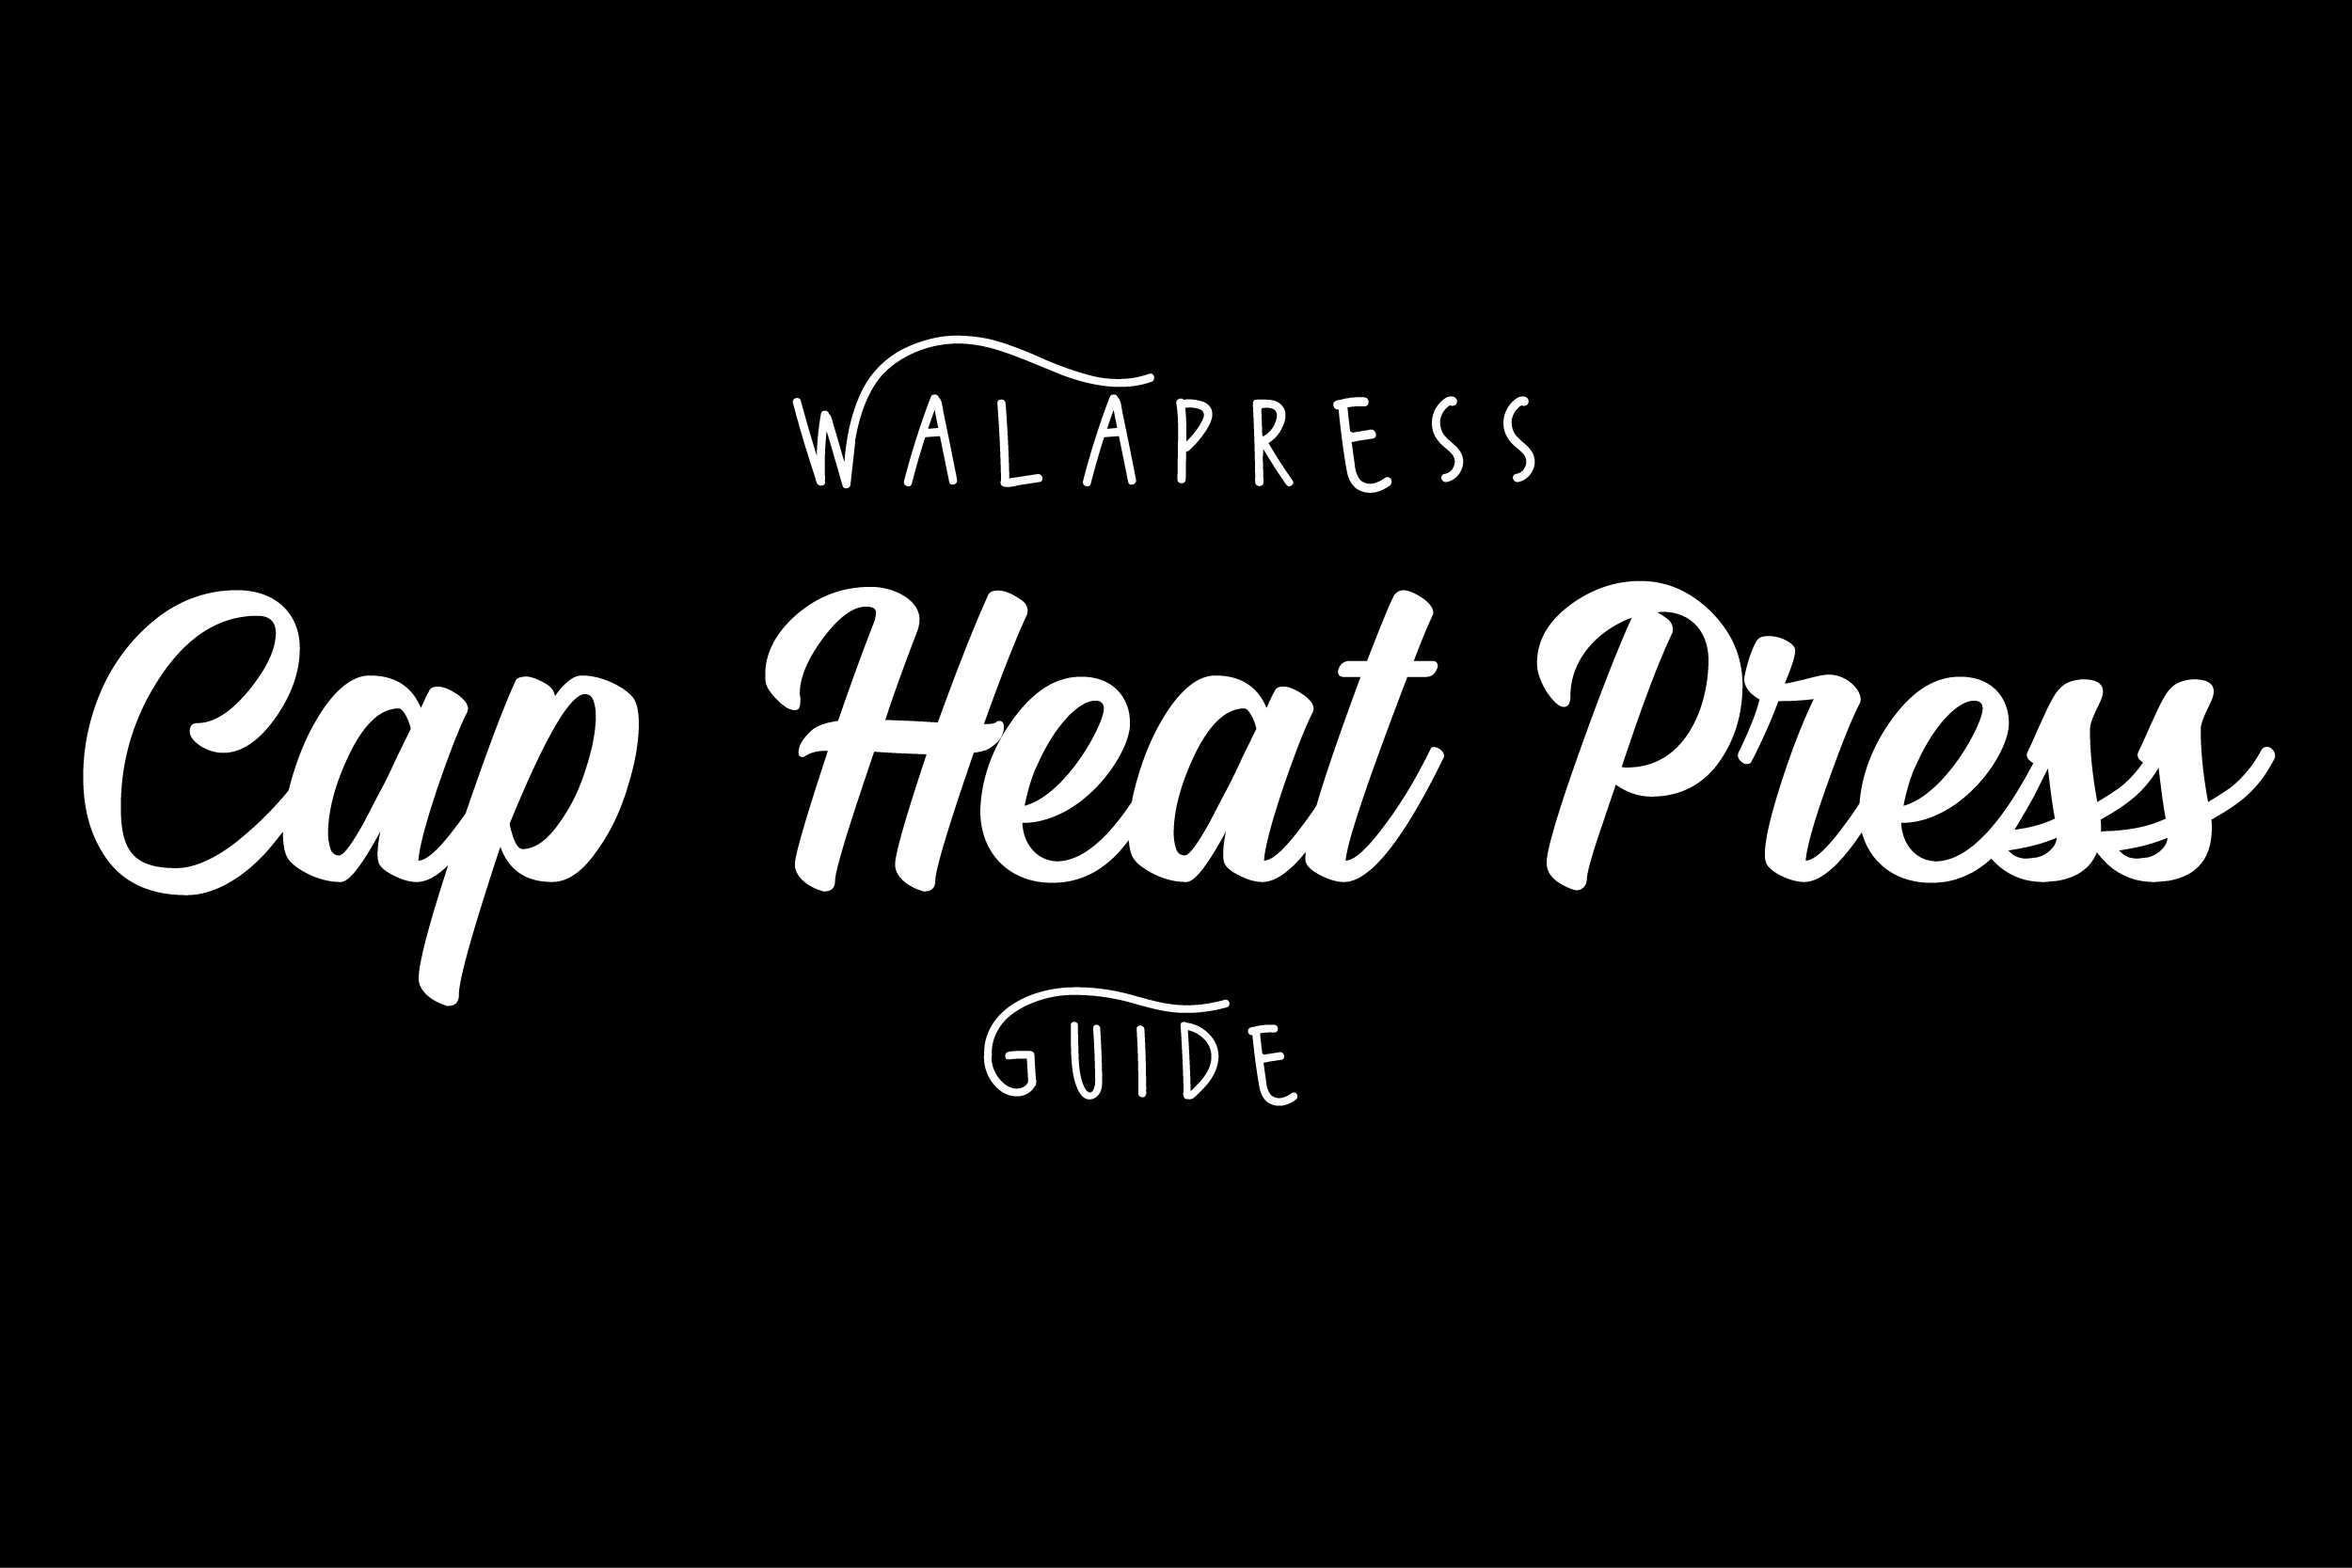 WALAPress Auto Open Cap Heat Press